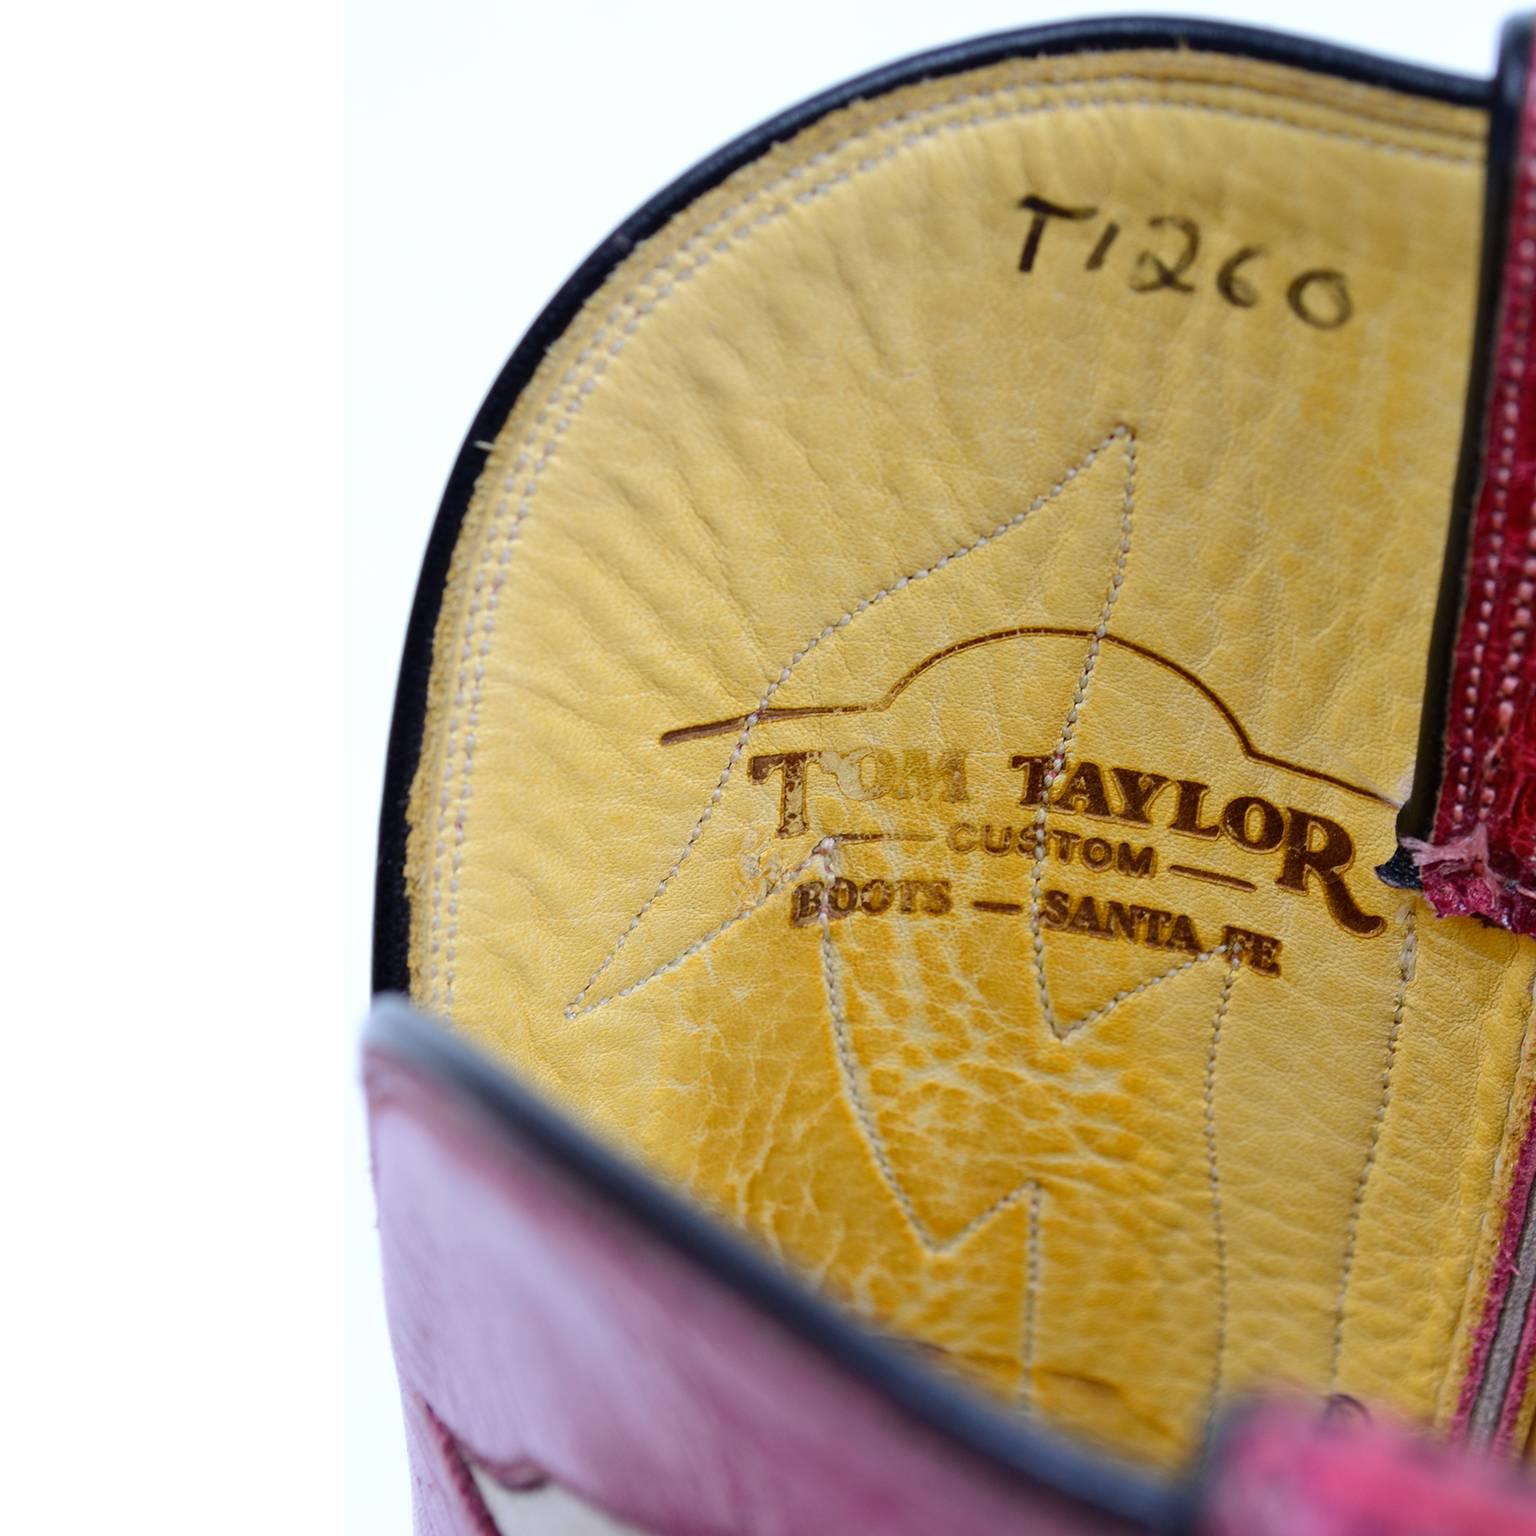 Vintage Tom Taylor Pink Cowboy Boots Santa Fe Custom Leather & Snakeskin 7 3